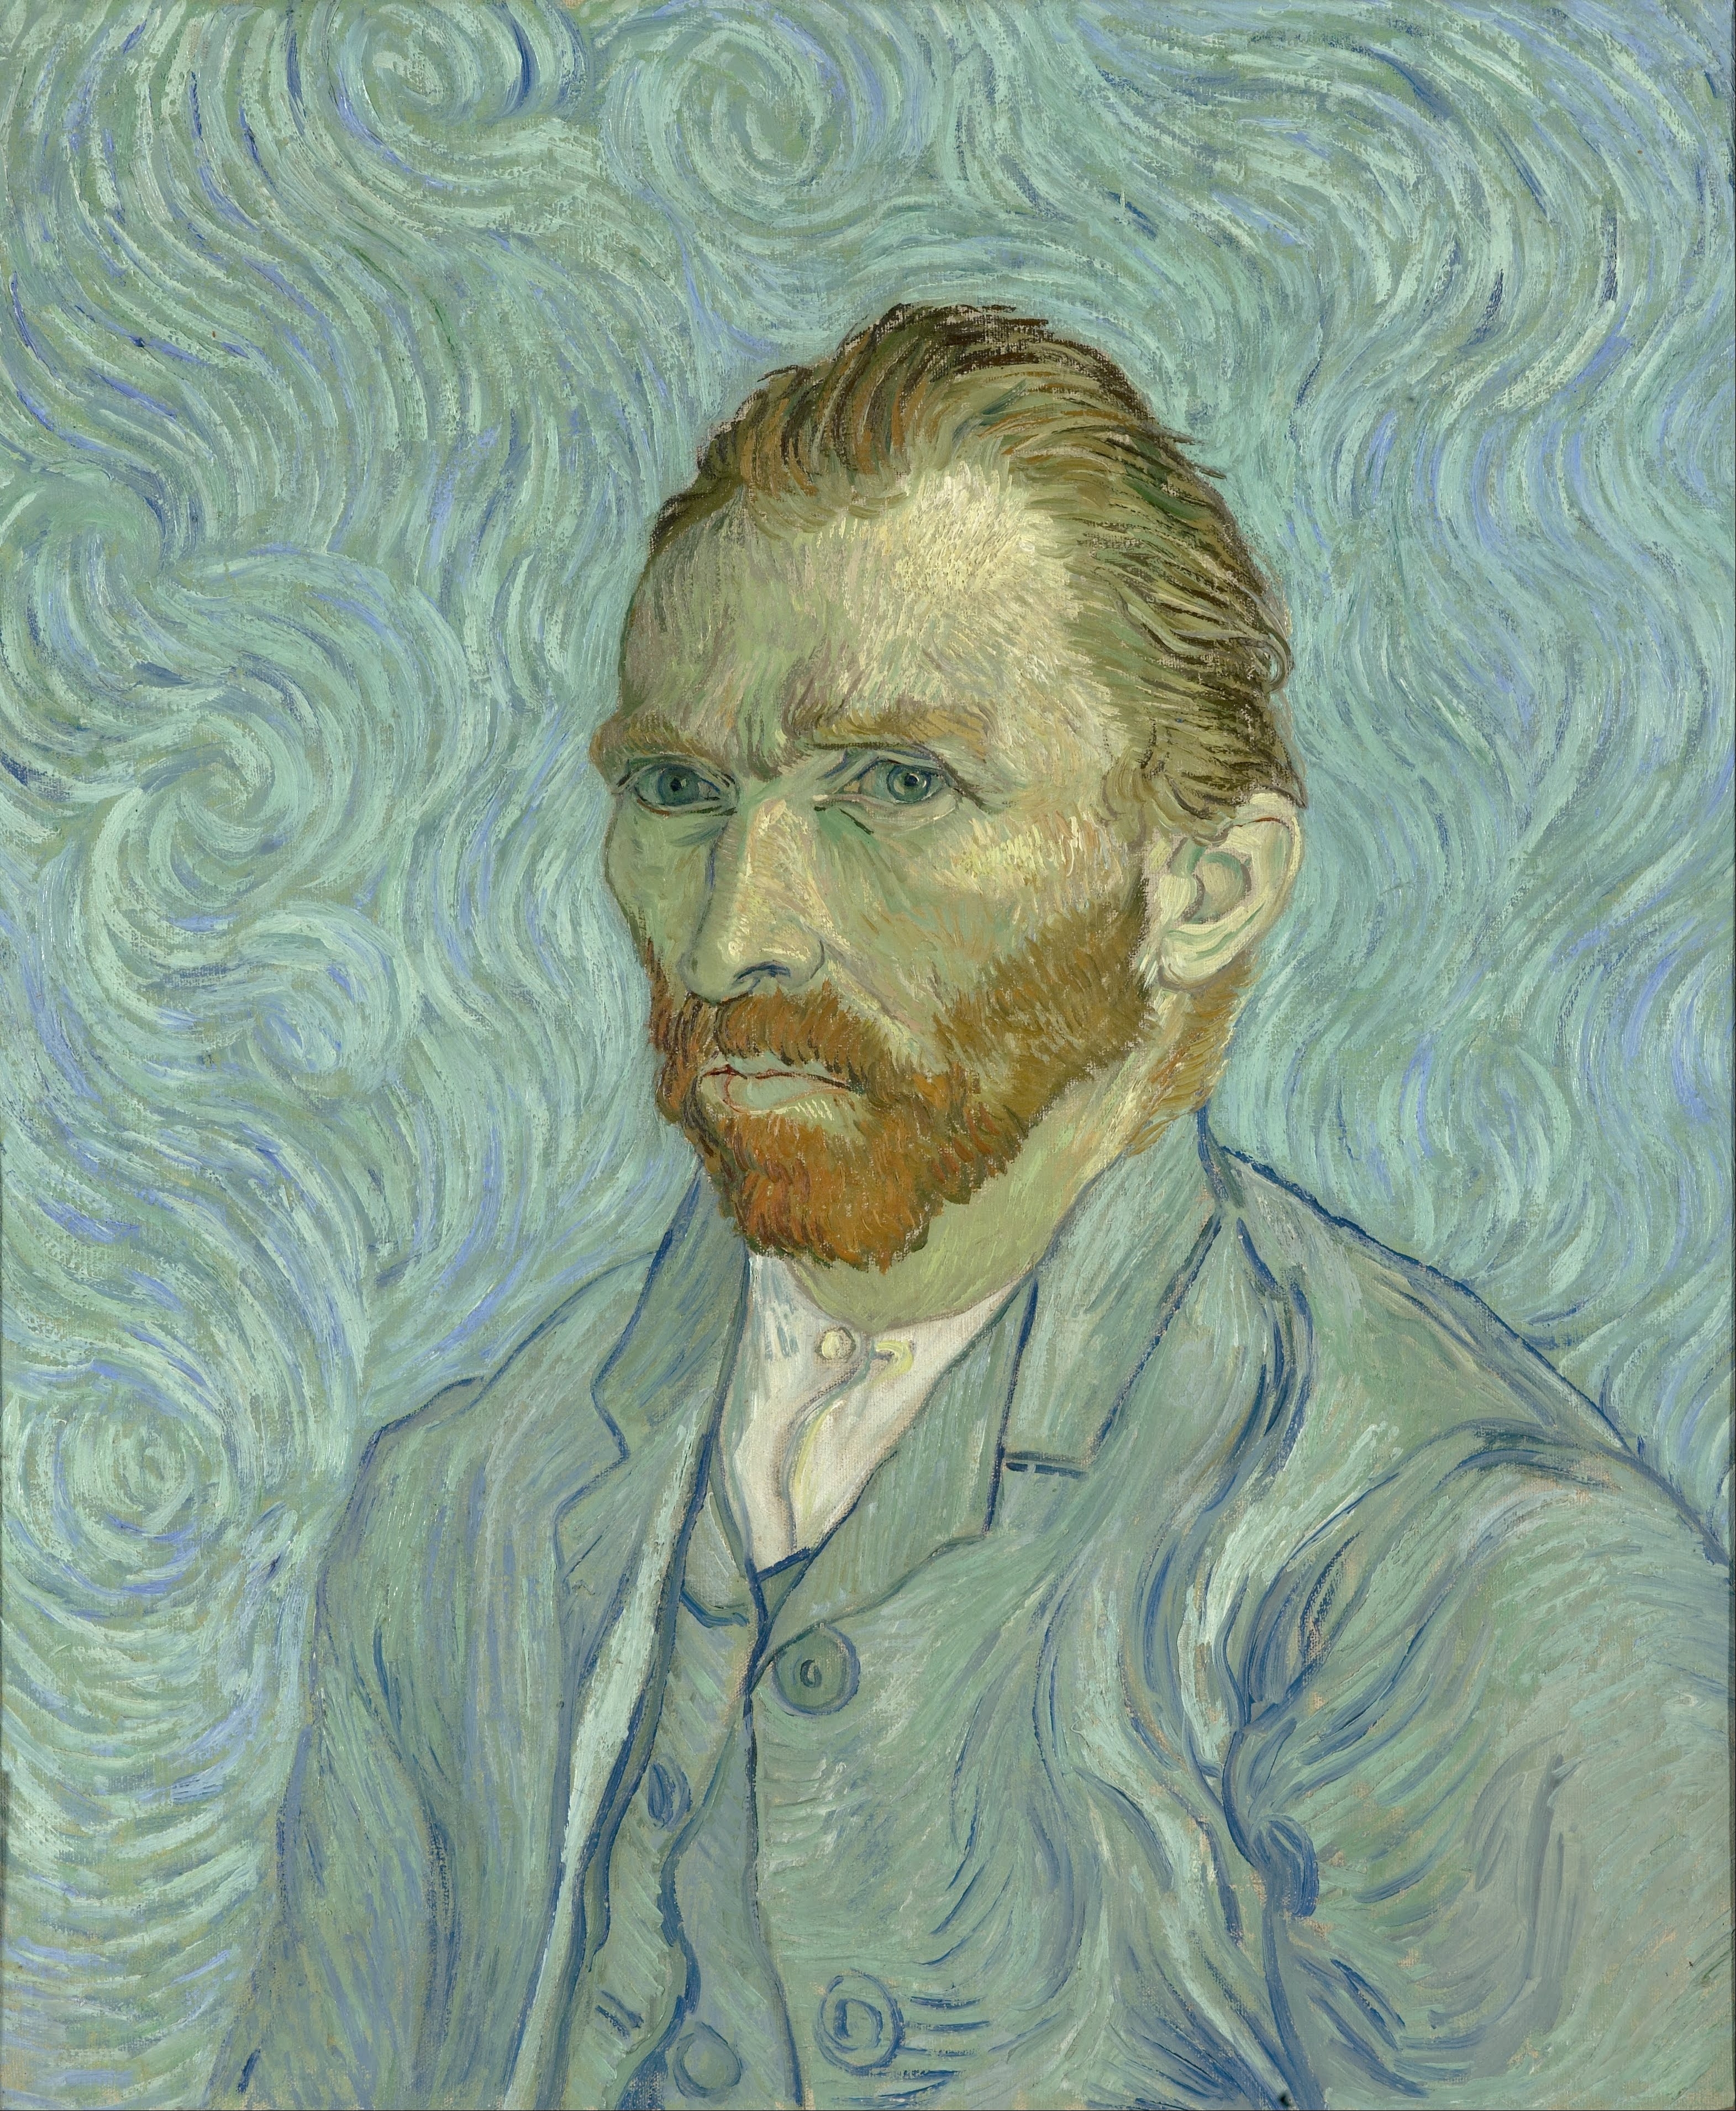 auteur Vincent Van Gogh de la citation Pour les grandes choses, ne faites pas juste sur l'impulsion, mais sont une succession de petites choses liées.